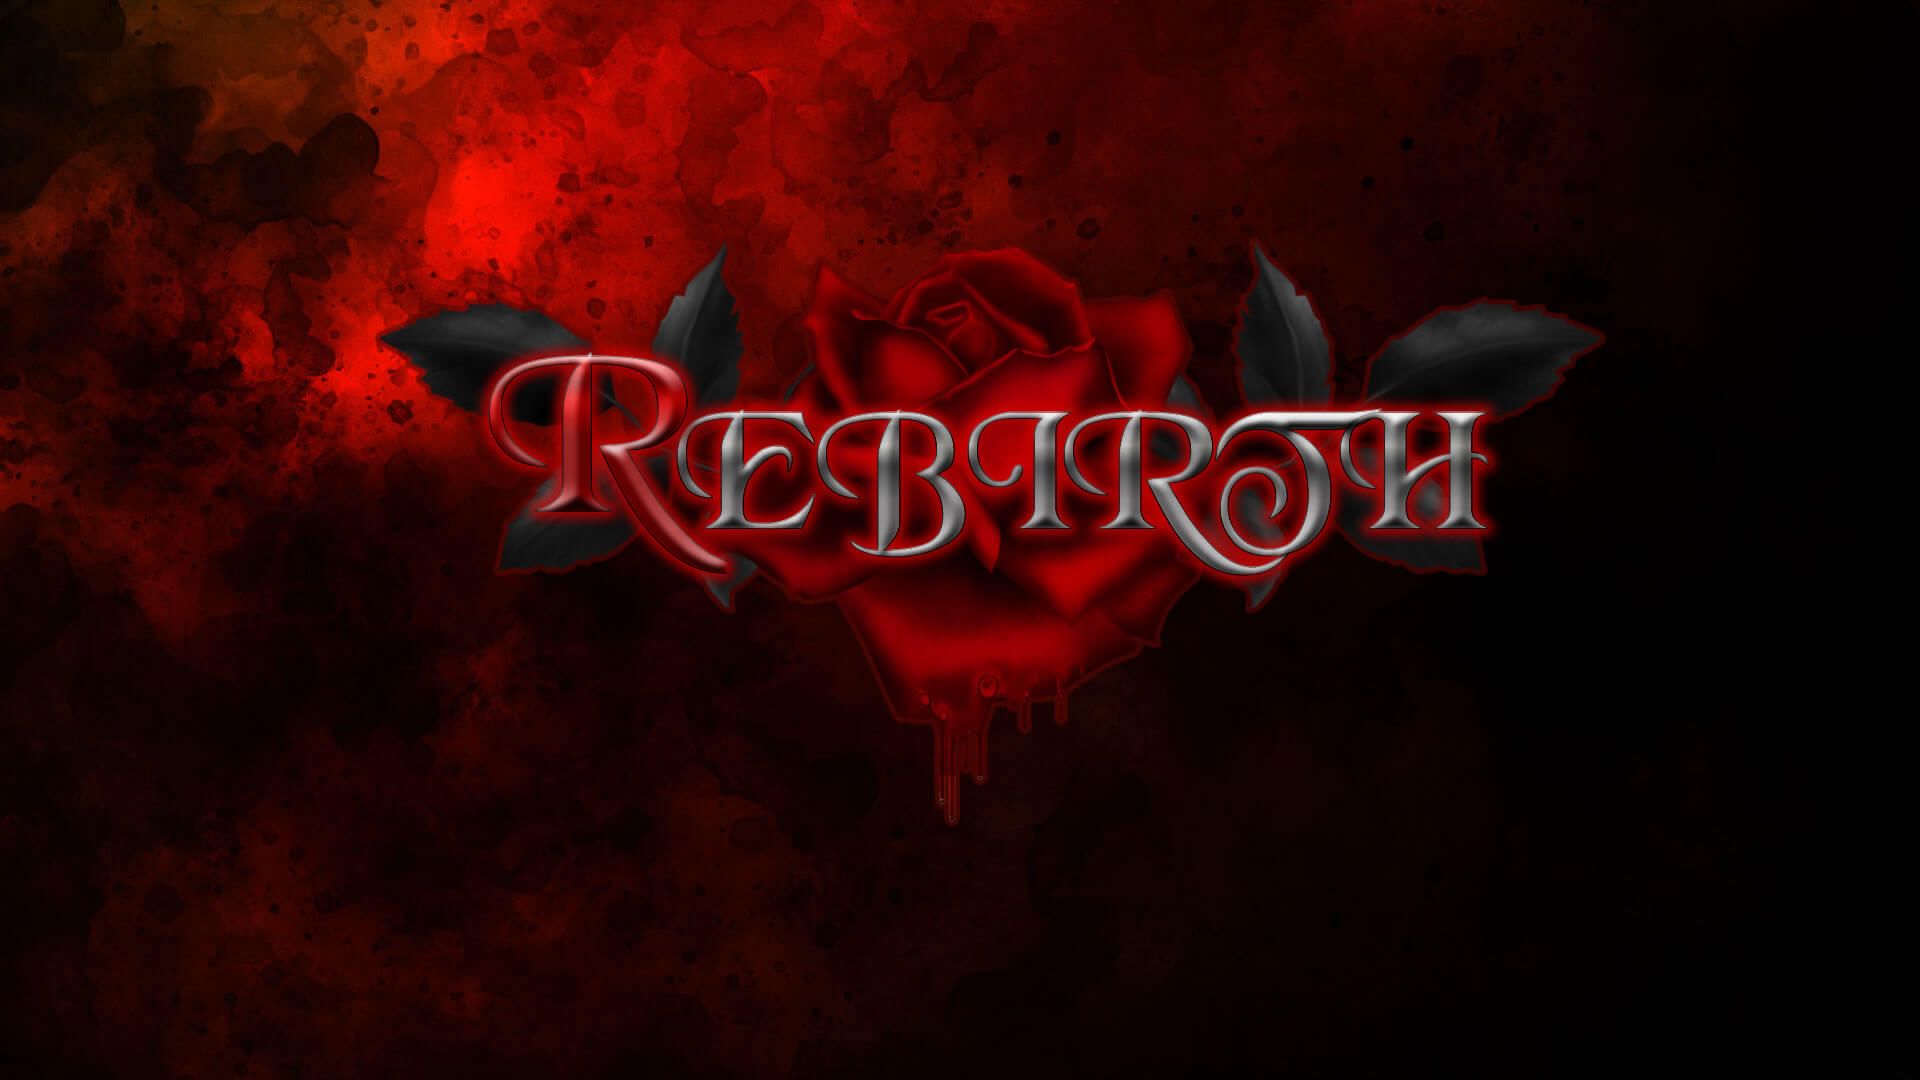 Rebirth [Episode 4 Update 3]